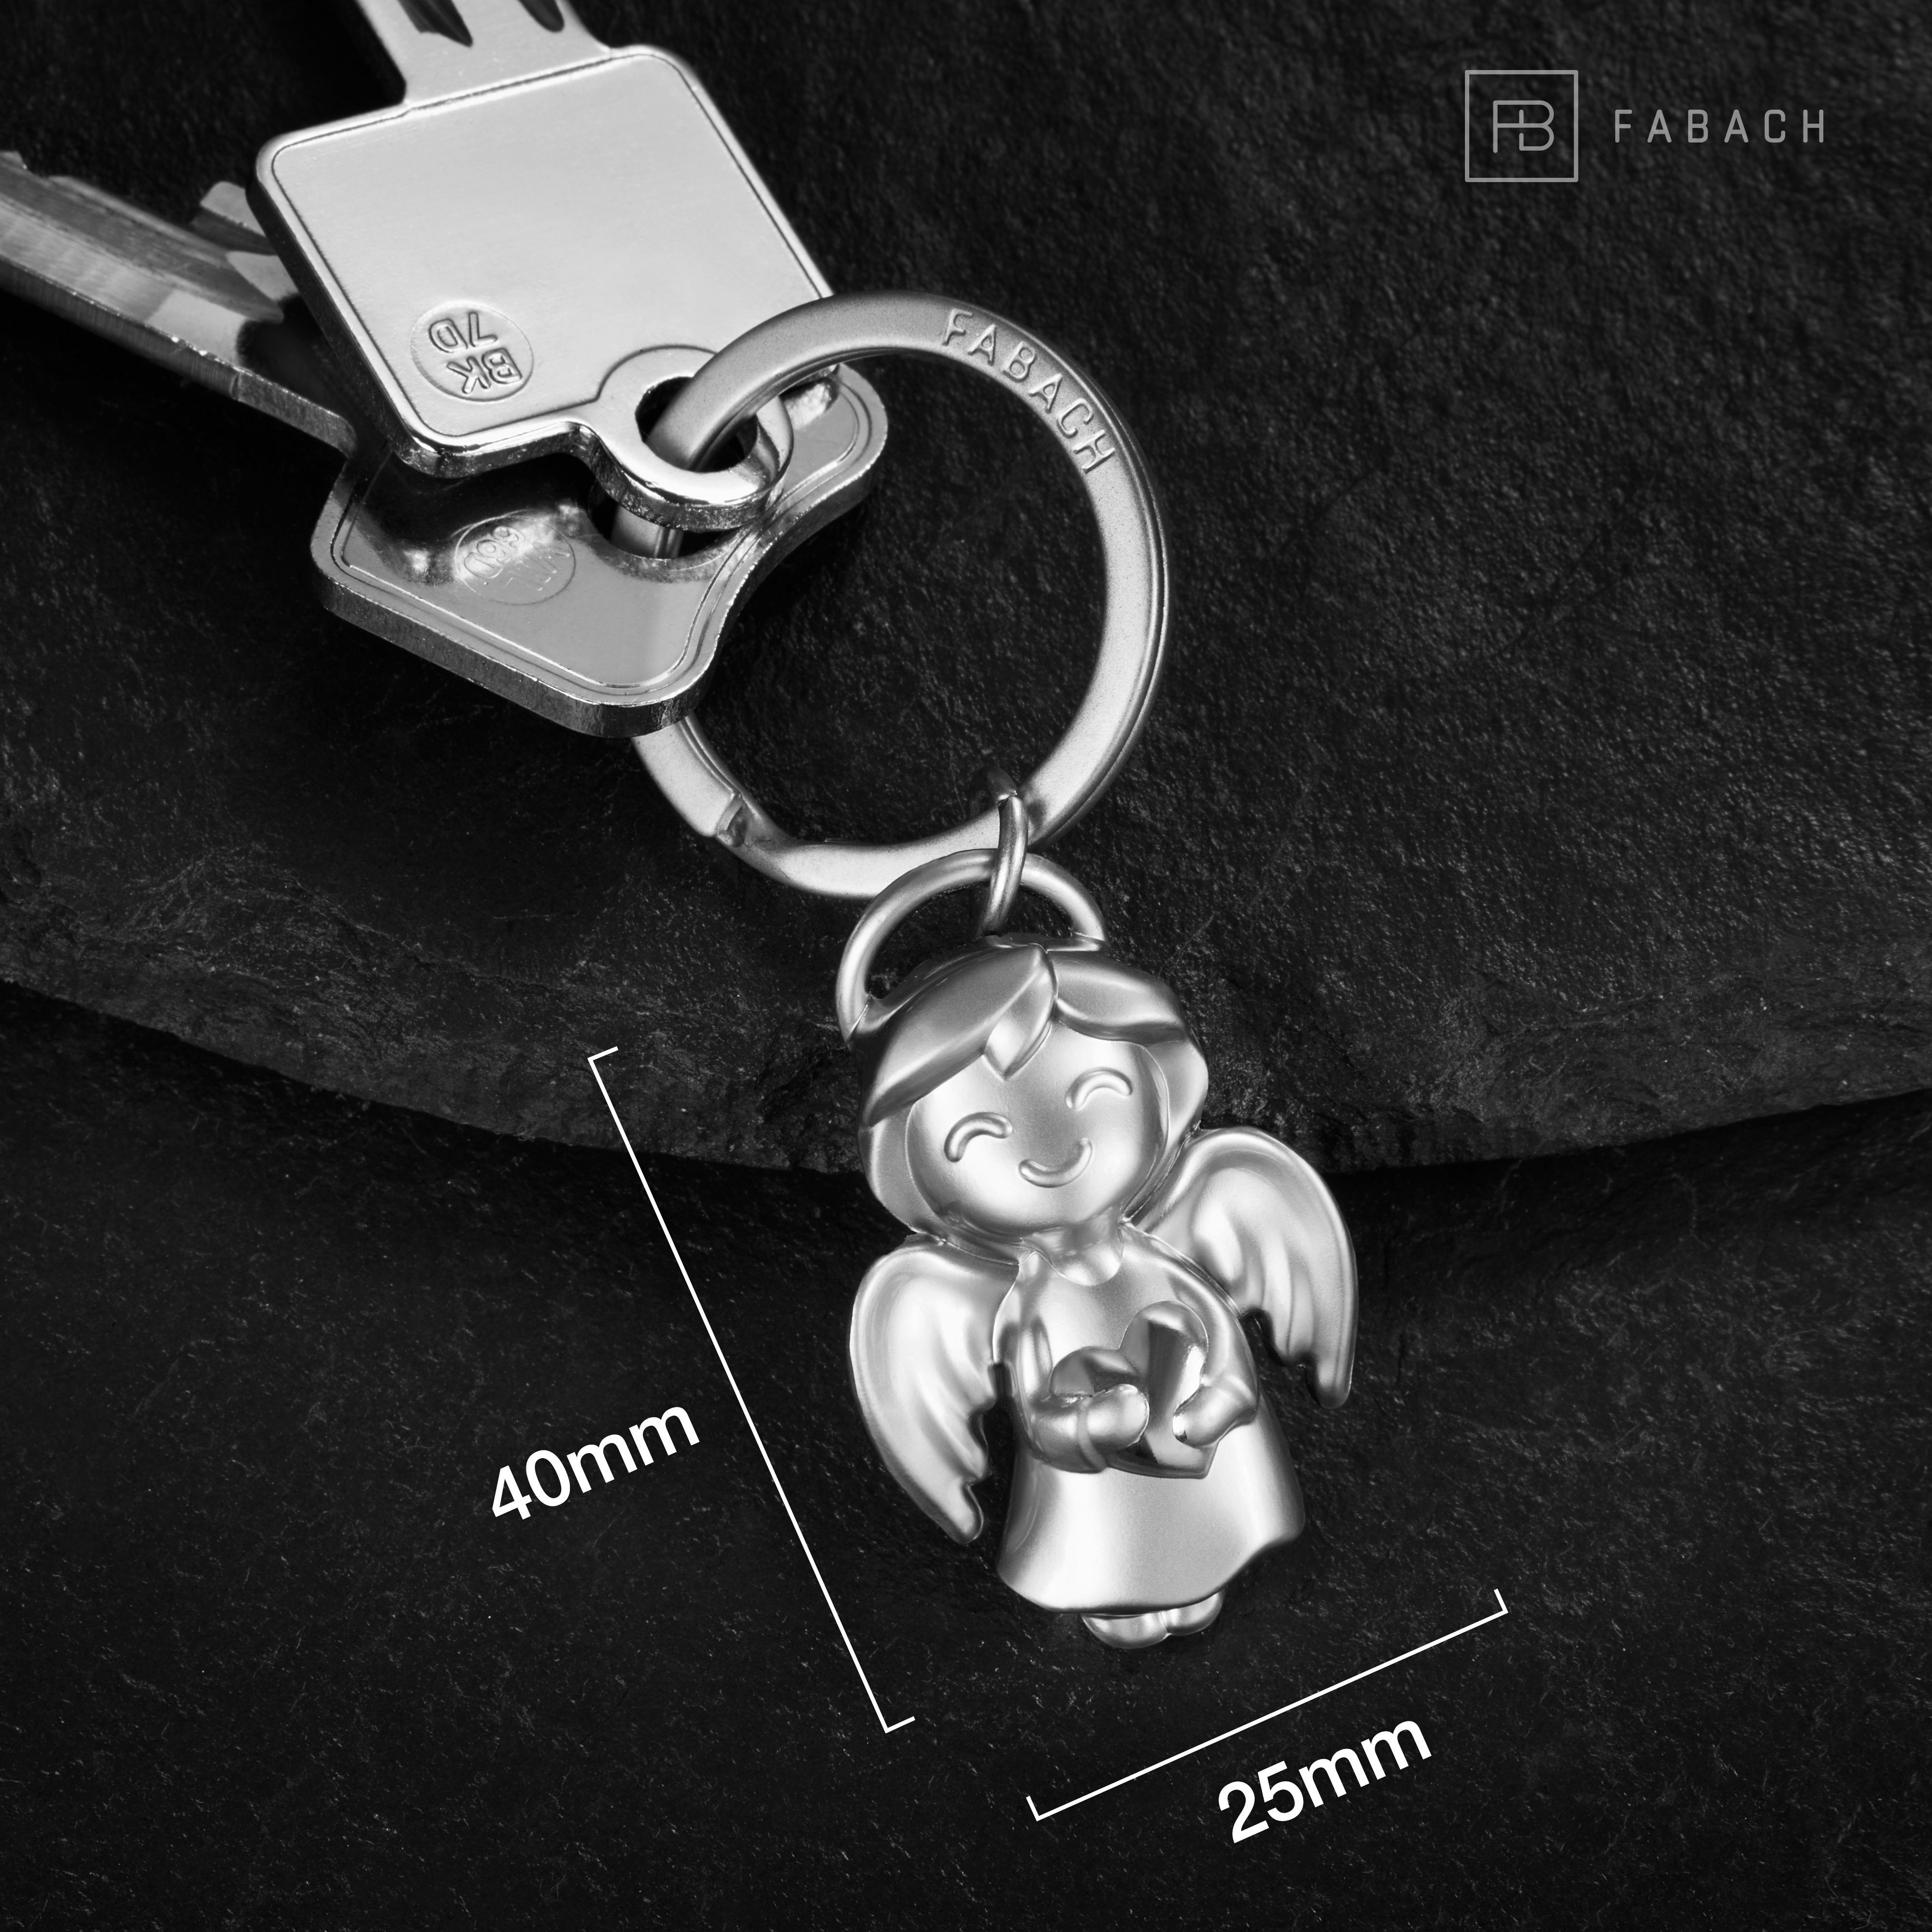 Schutzengel Glücksbringer - Schlüsselanhänger FABACH Glücksengel " mit Shiny" Engel Silber Herz -